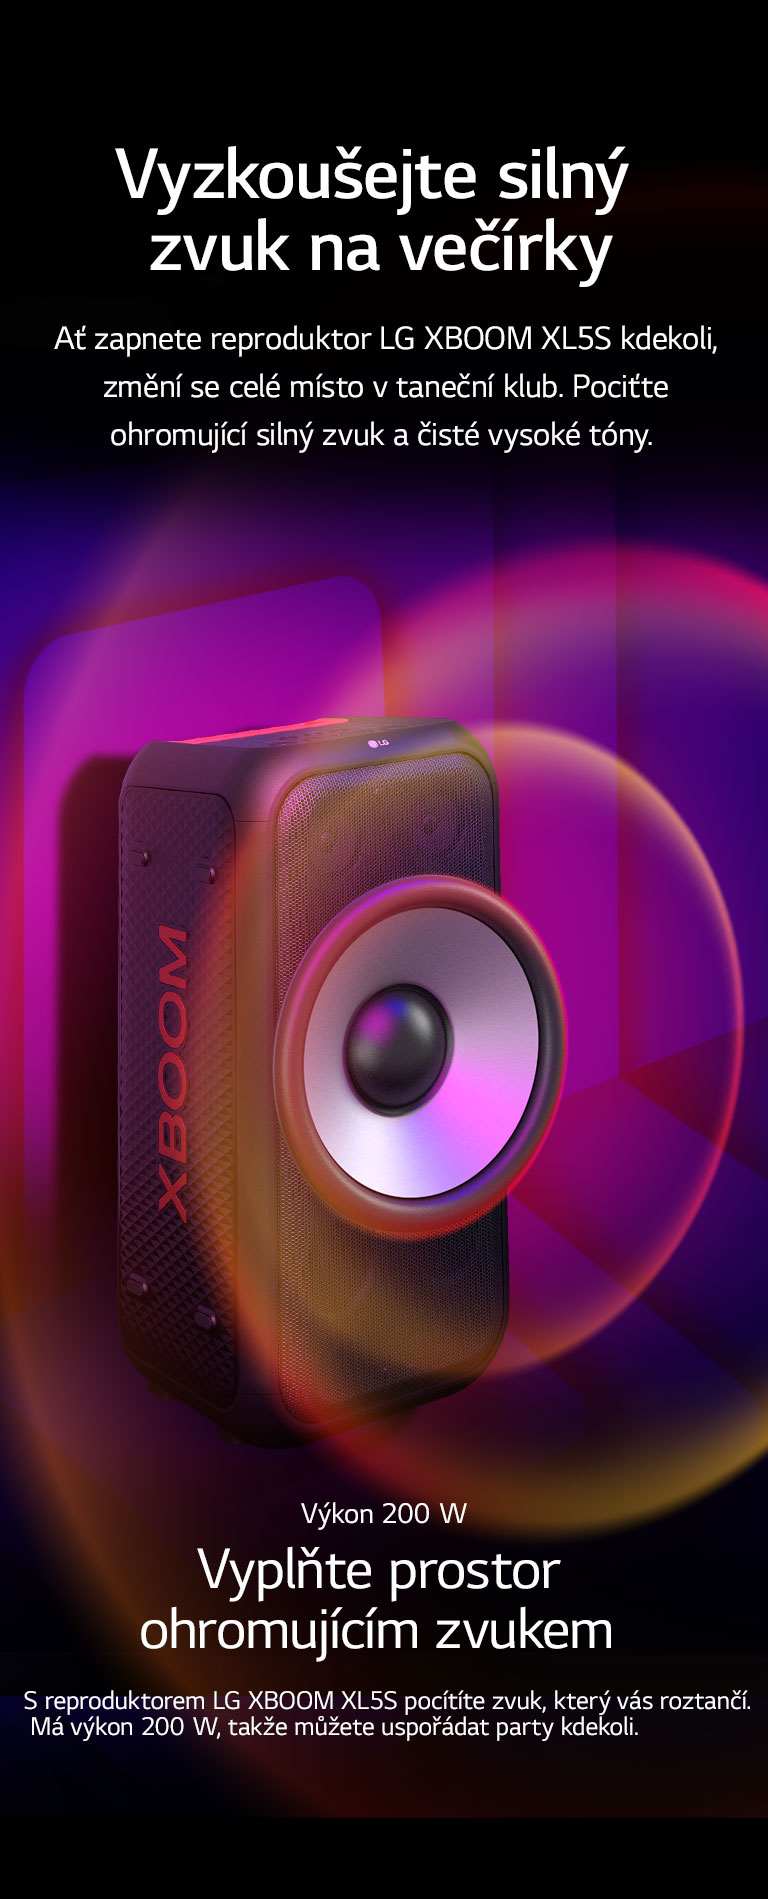 Reproduktor LG XBOOM XL5S je umístěn v nekonečném prostoru. Na stěně je znázorněna čtvercová zvuková grafika. Uprostřed reproduktoru je zvětšený 6,5palcový obří woofer, který znázorňuje výkon 200 W. Z wooferu vychází zvukové vlny. 